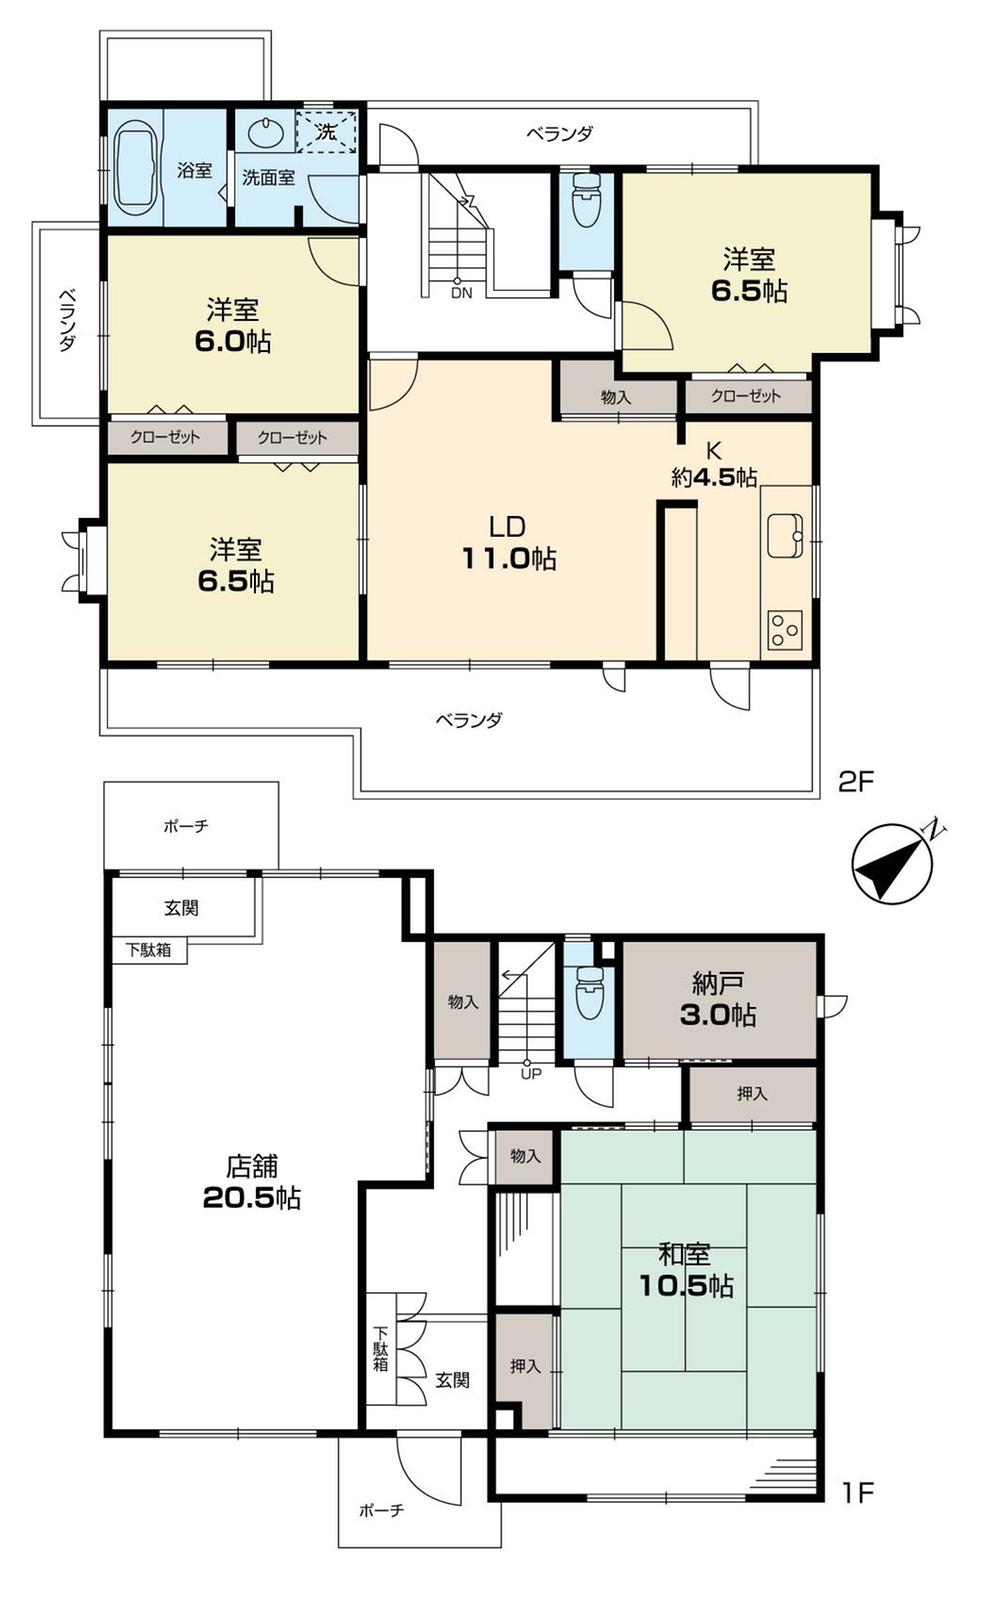 Floor plan. 72,800,000 yen, 5LDK + S (storeroom), Land area 200.27 sq m , Building area 168.55 sq m